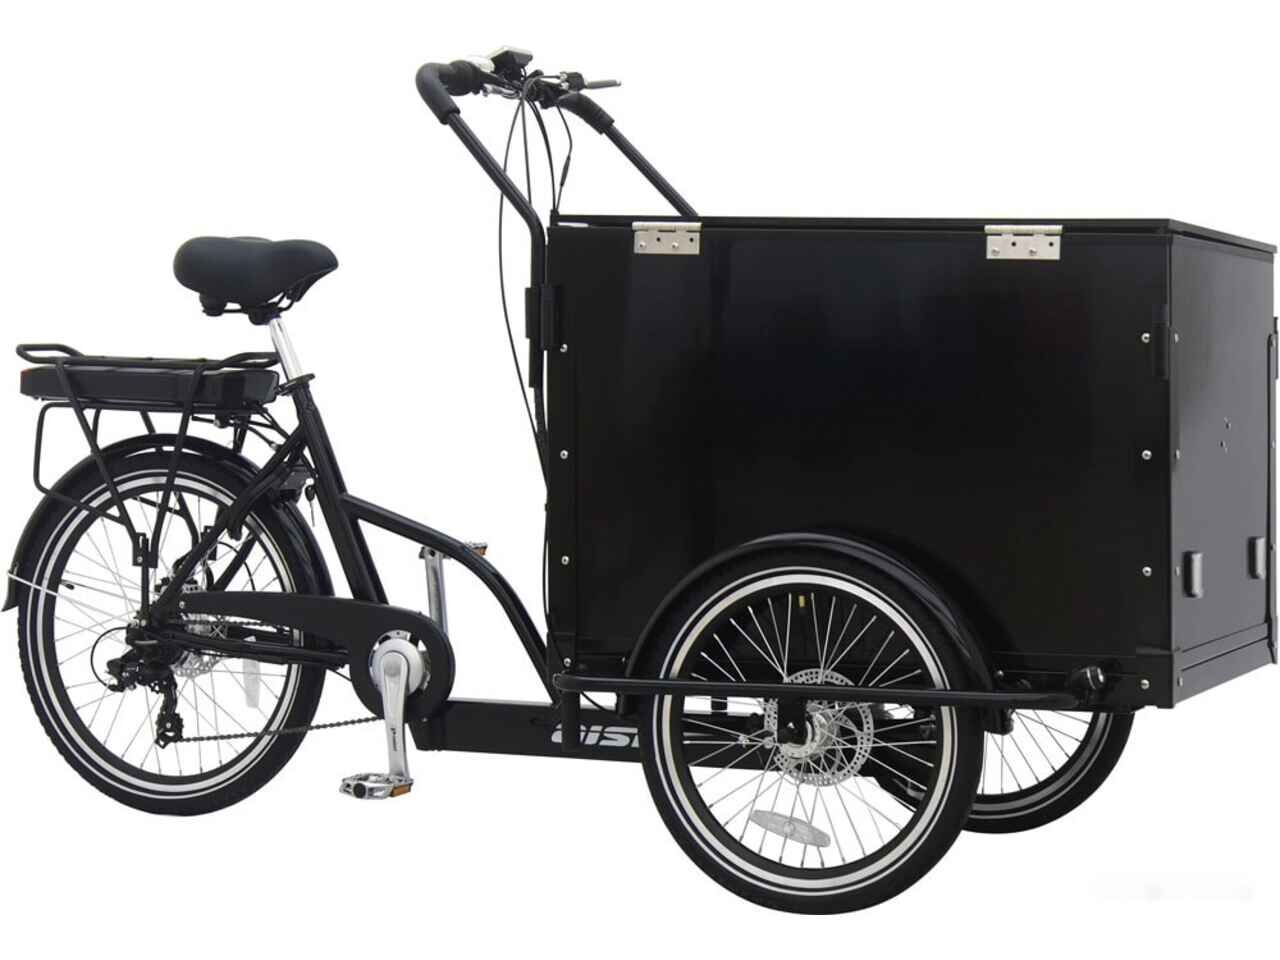 Купить электровелосипед в беларуси недорого с доставкой. Электровелосипед Aist. Трехколесный электровелосипед карго 500w. E-Bike Aist Cargo. Велосипед Aist Cargo 1.1.